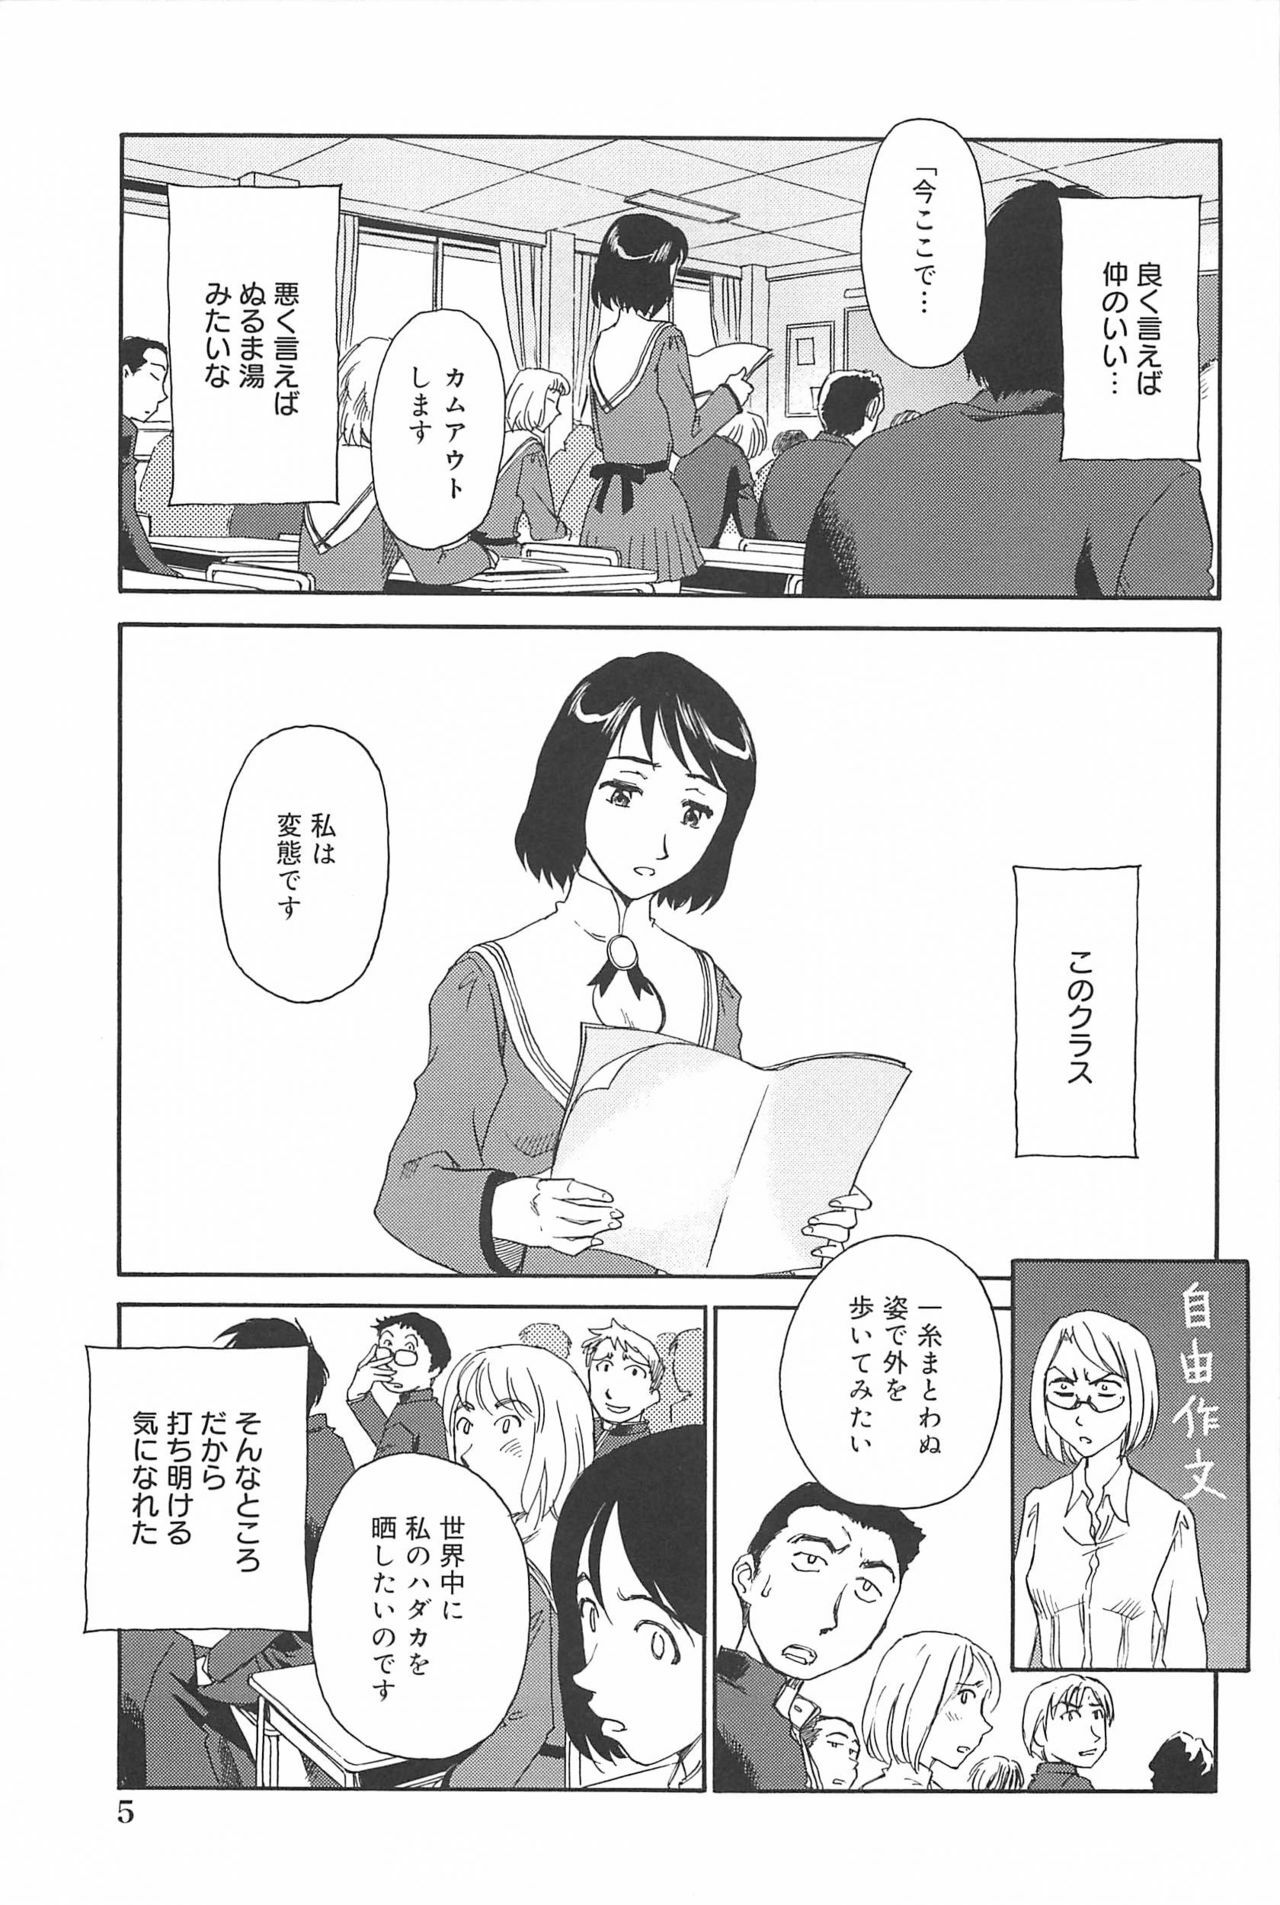 [Suehirogari] Kumo no Michi page 6 full